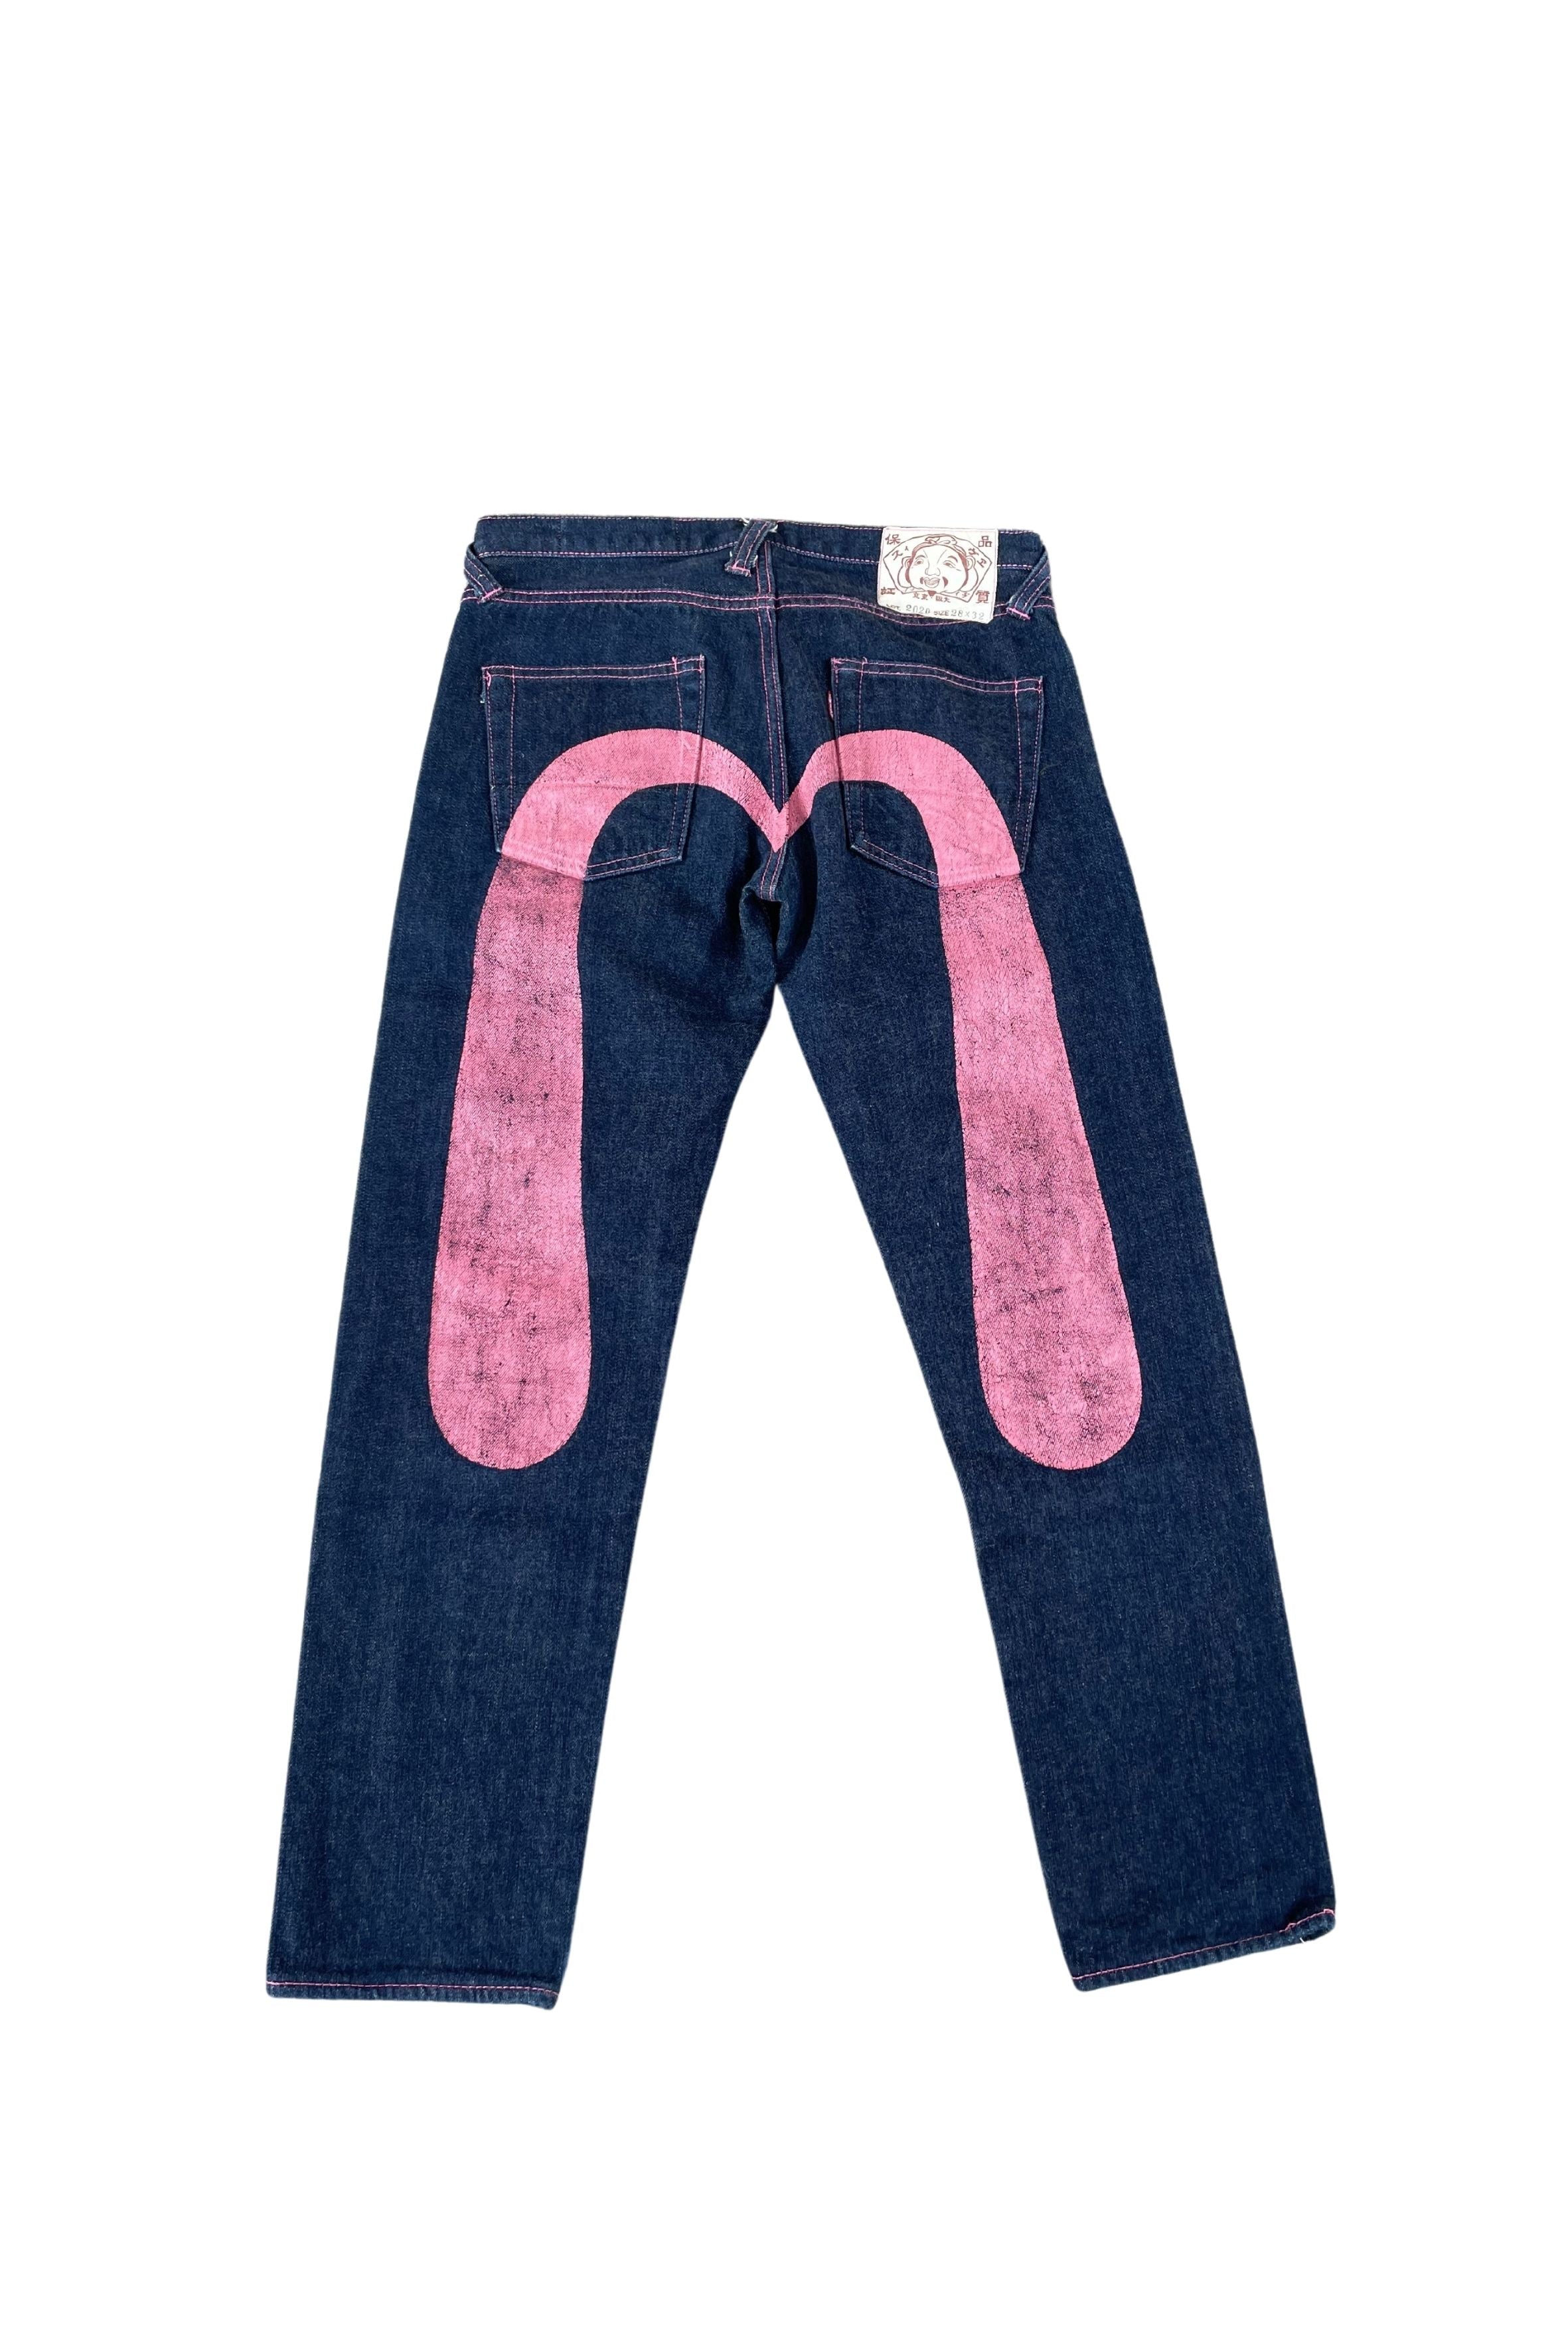 Evisu Pink Logo Jeans (RARE) 28 X 32